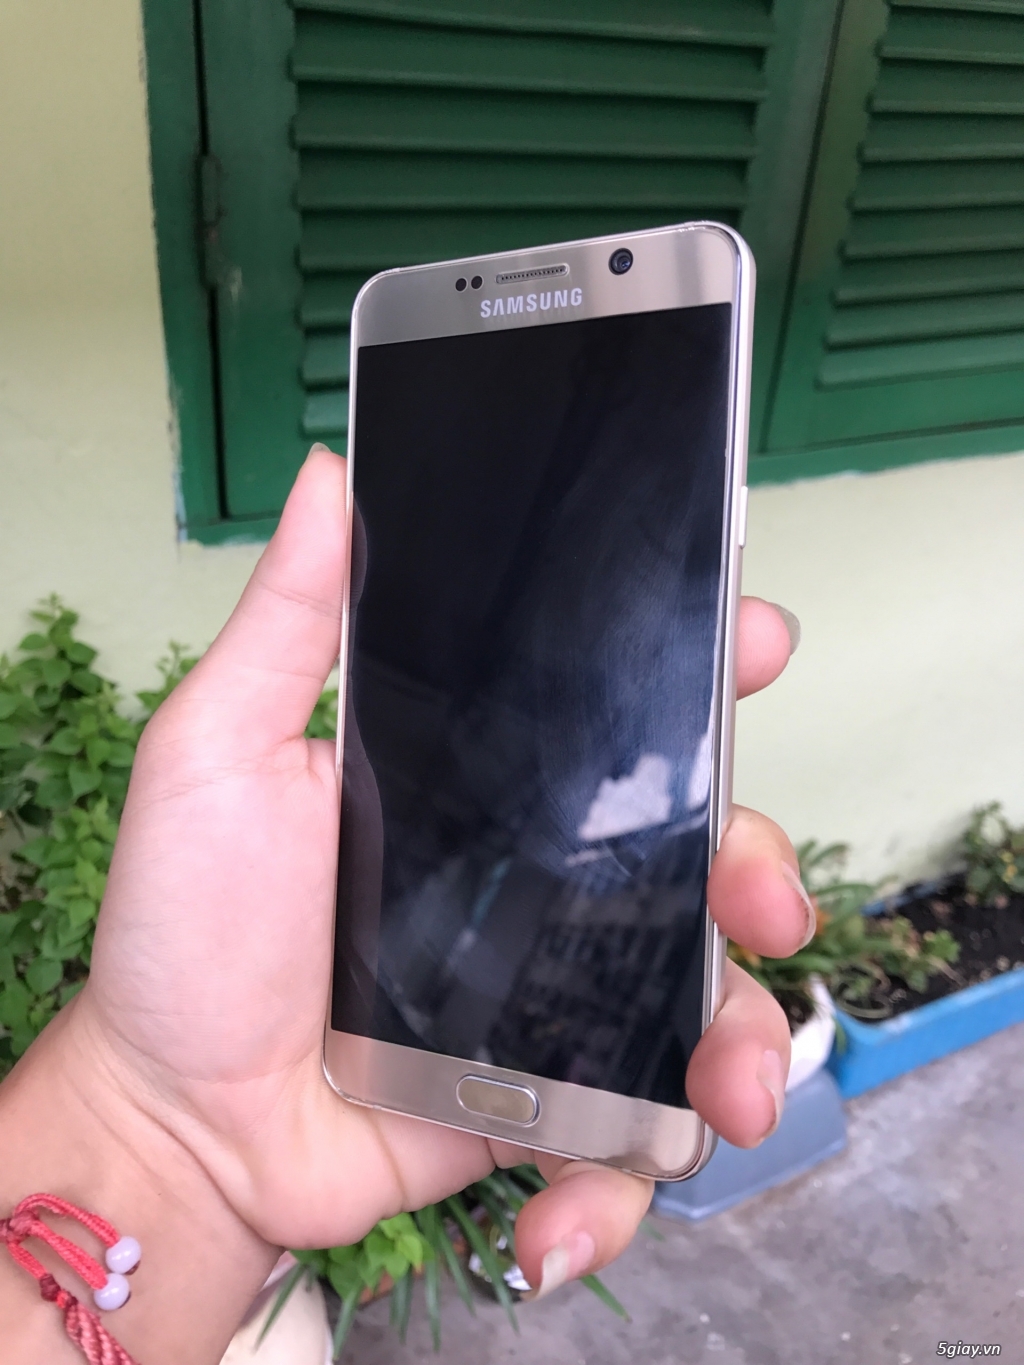 Samsung Galaxy NOTE 5, Ngoại hình đẹp, chức năng hoàn hảo - 4